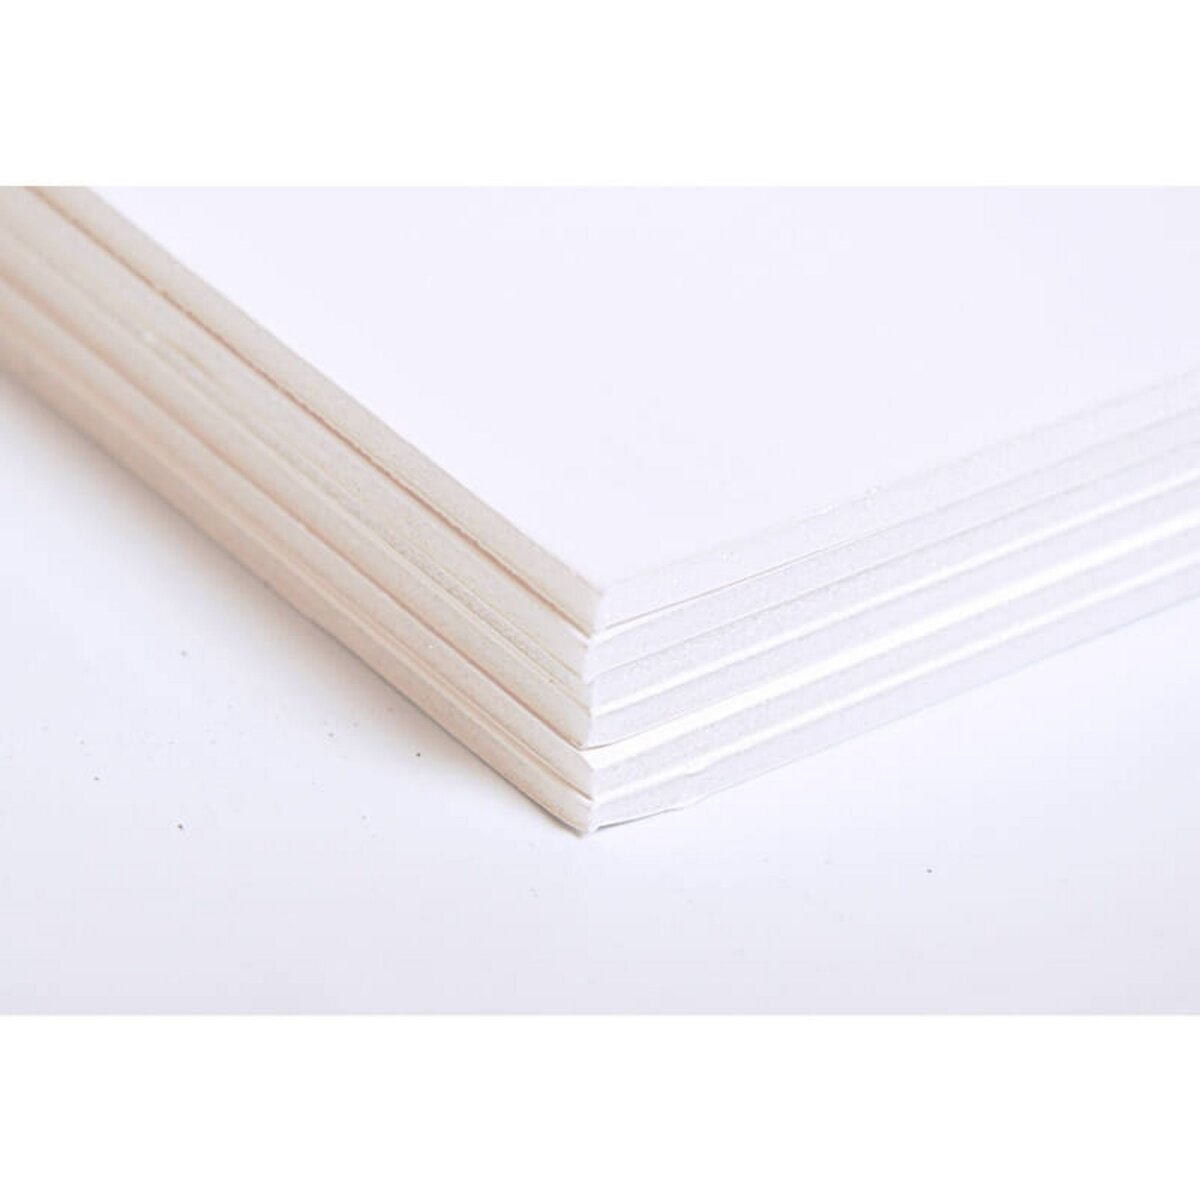 CLAIREFONTAINE Carton mousse blanc 50 x 65 mm en 3 mm pas cher 